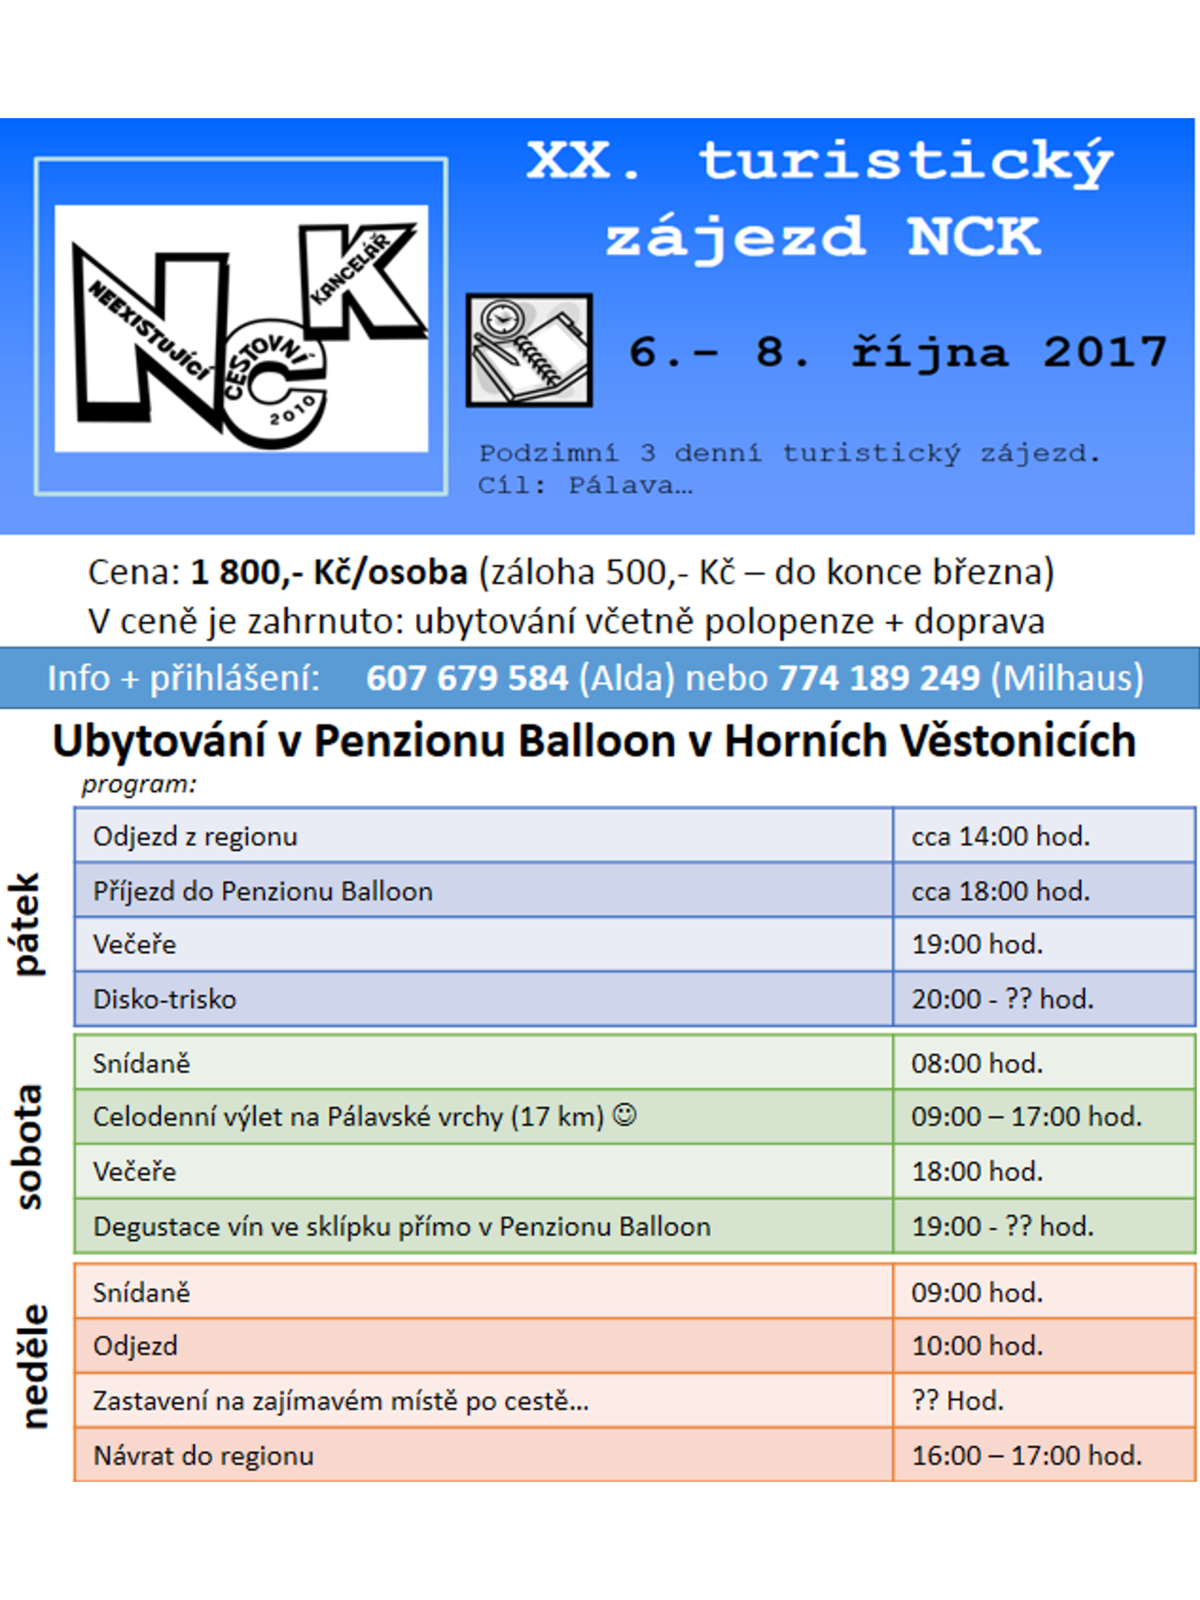 XX. zájezd NCK - reklamní leták_A4.png